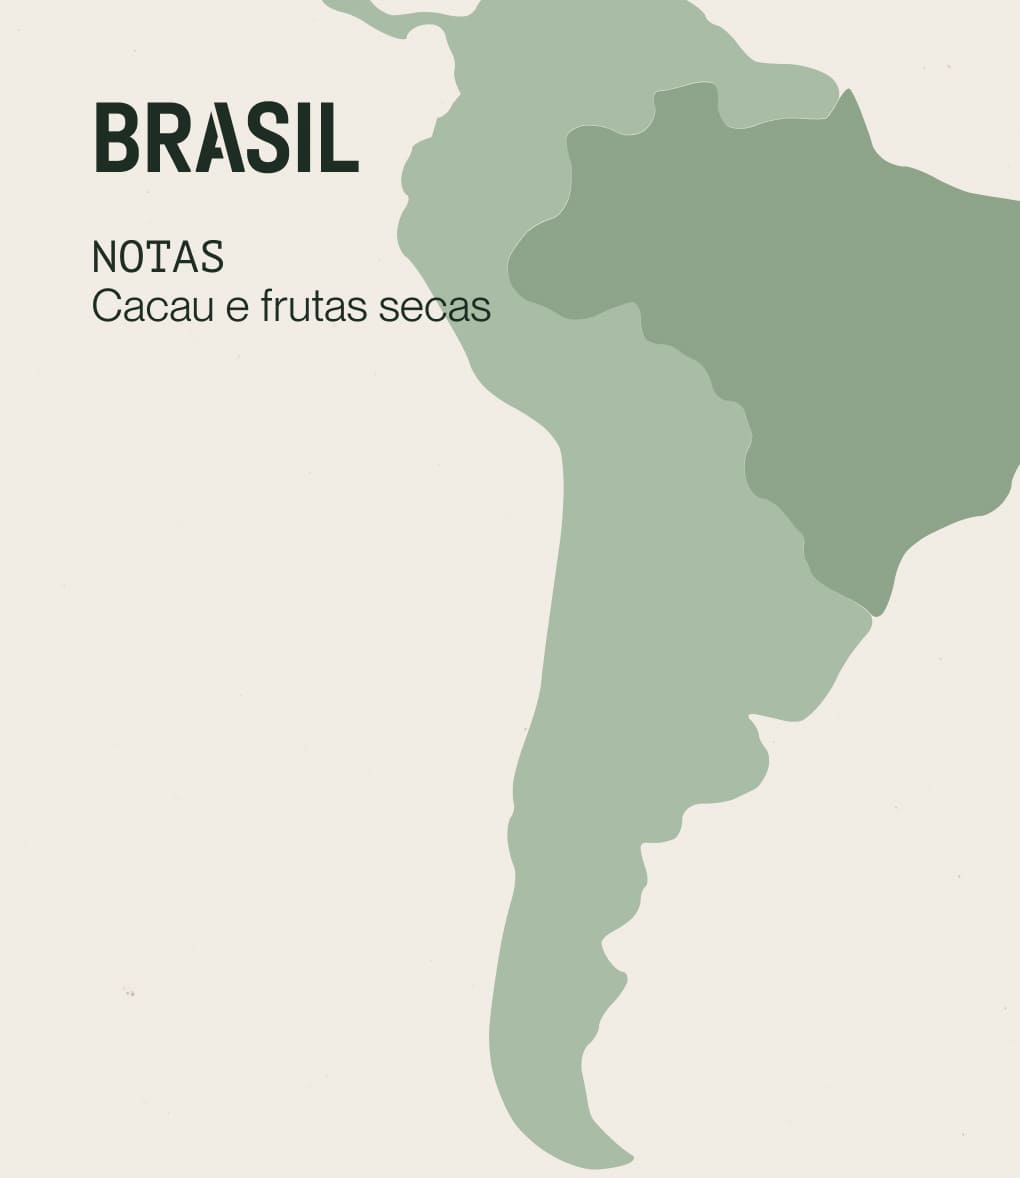 Notas de degustação de café de especialidade originário do Brasil